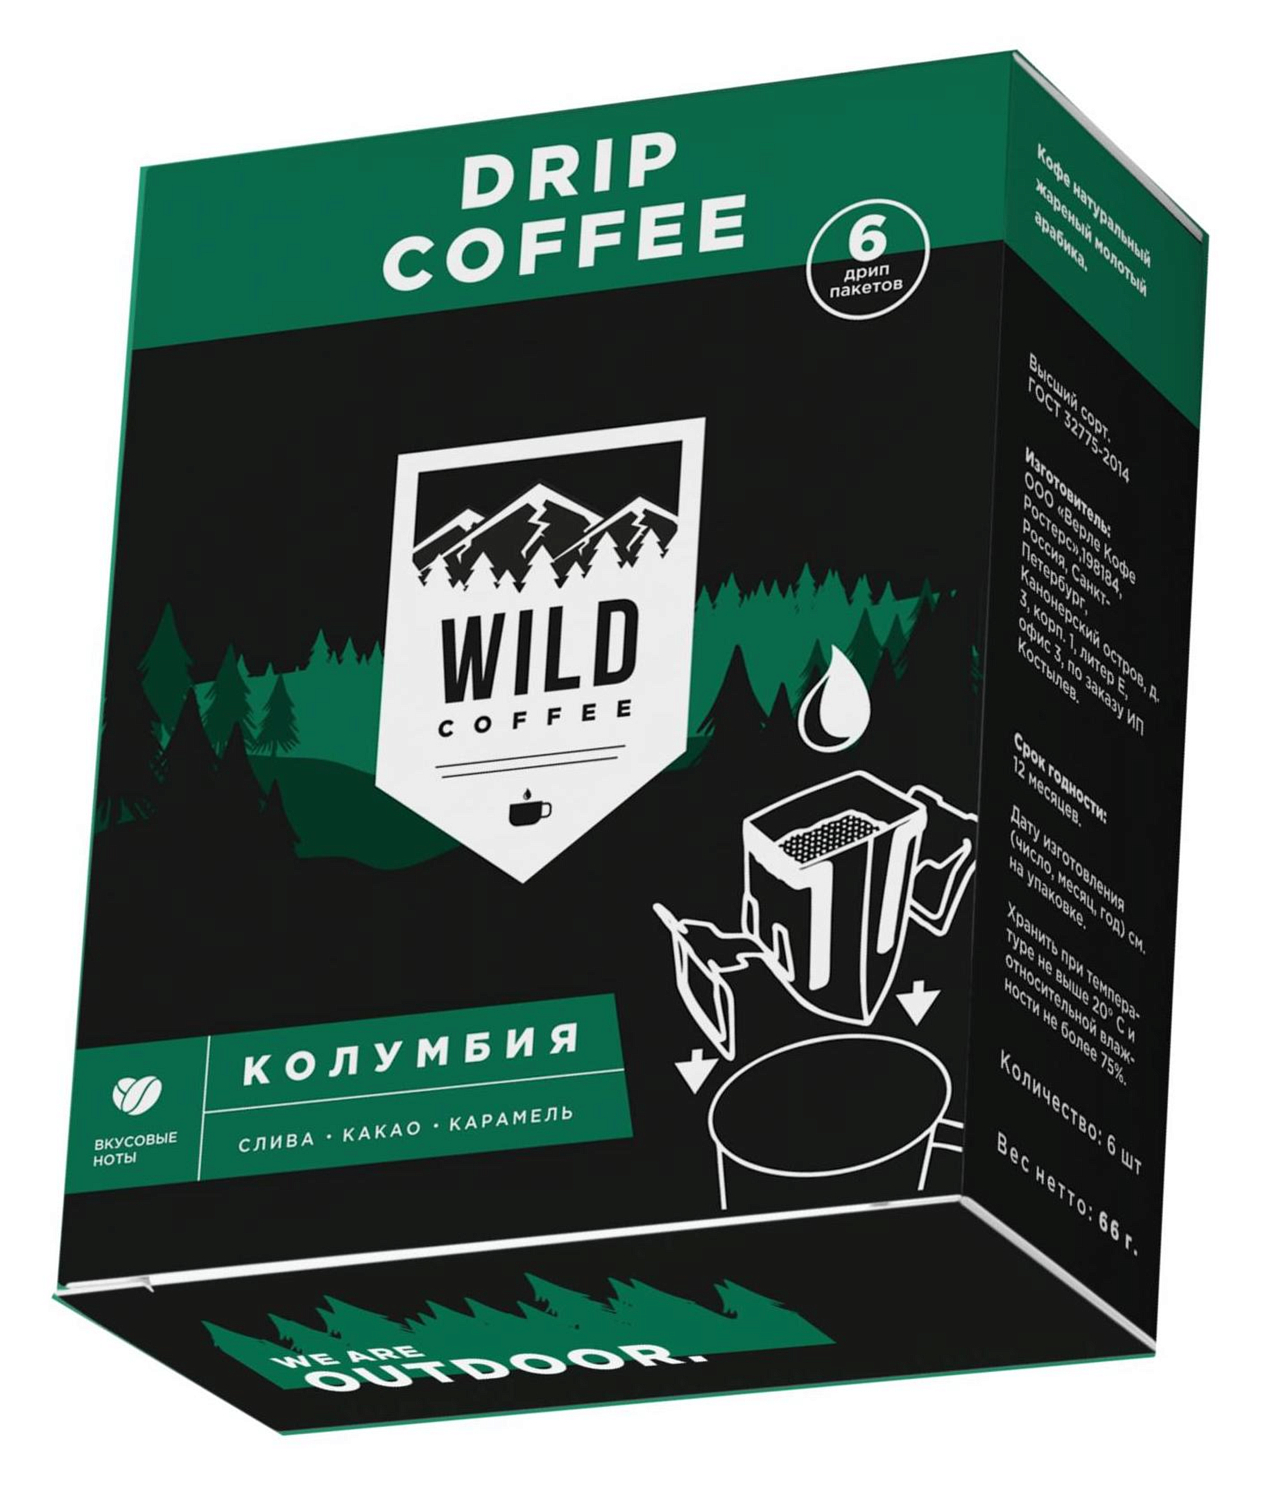 Кофе Wild Coffee Колумбия, 6 дрип-пакетов